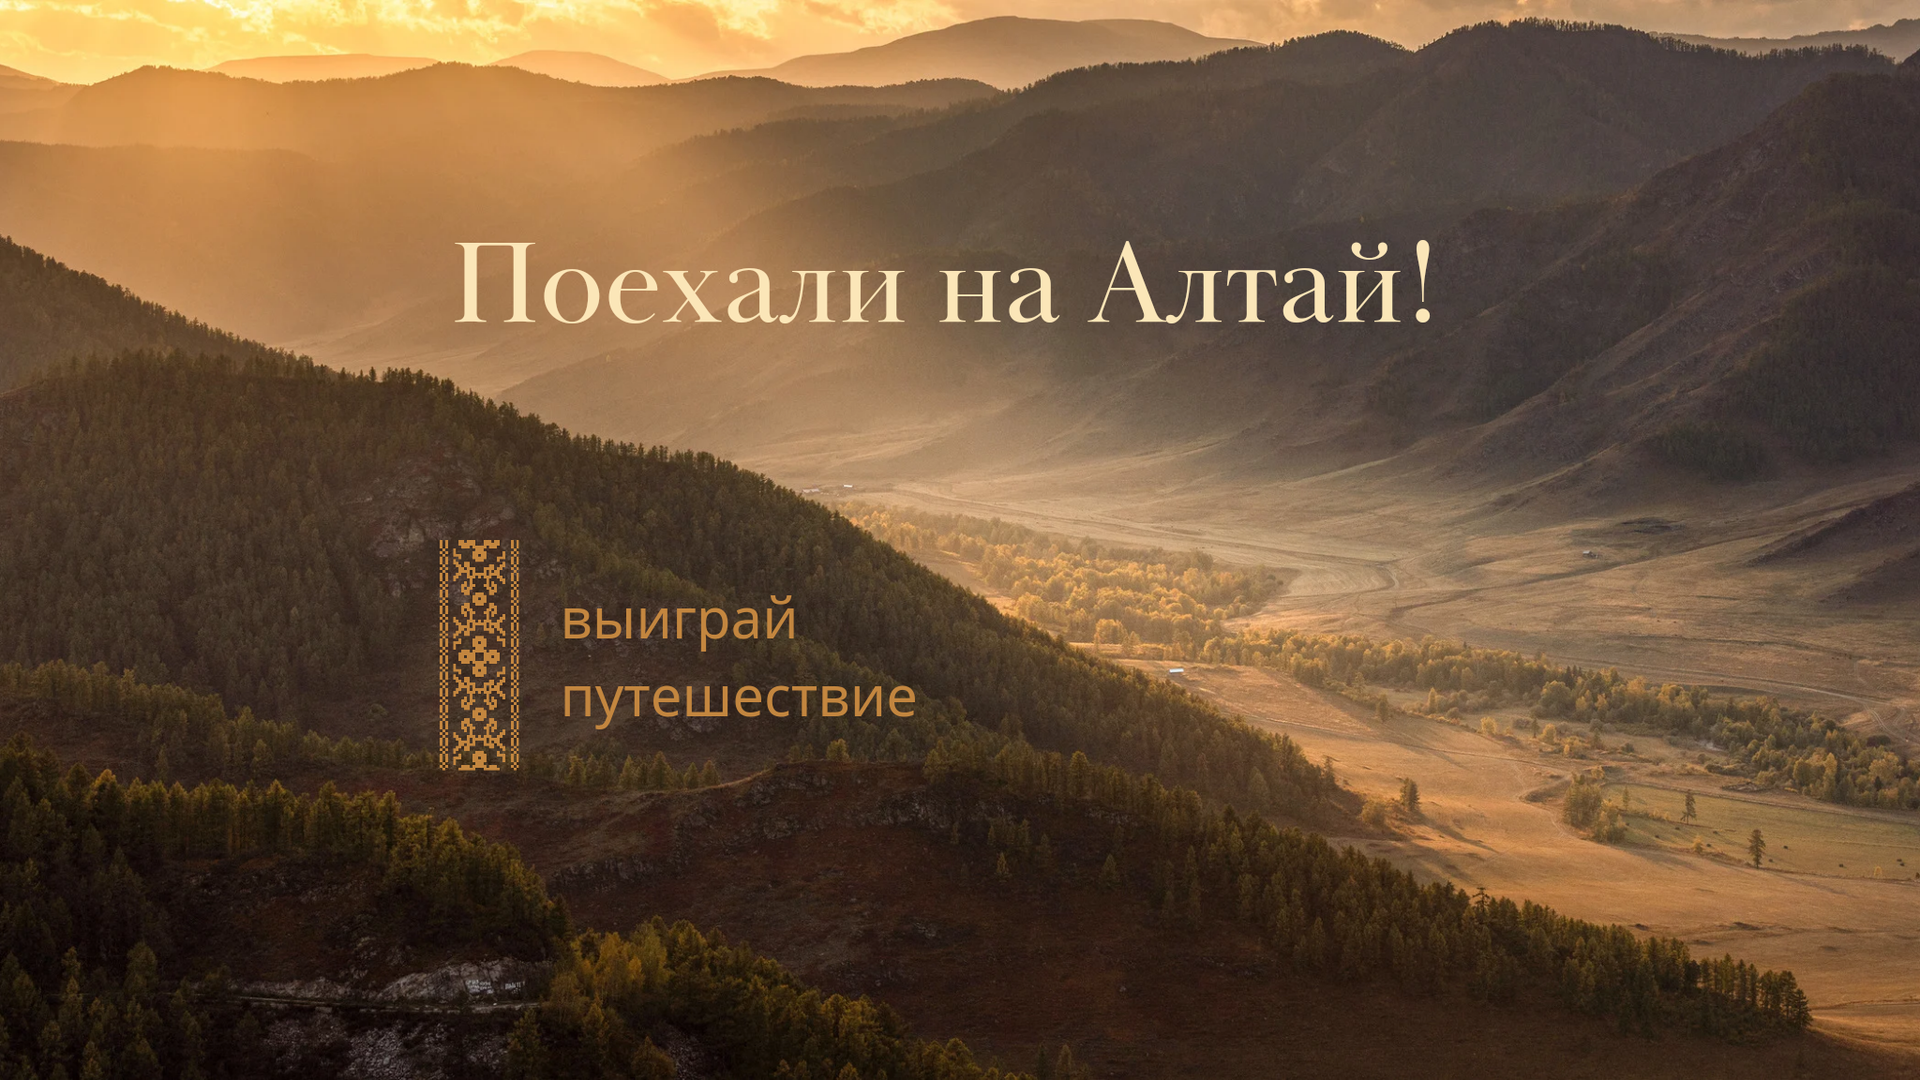 Розыгрыш двух путешествий в Горный Алтай.